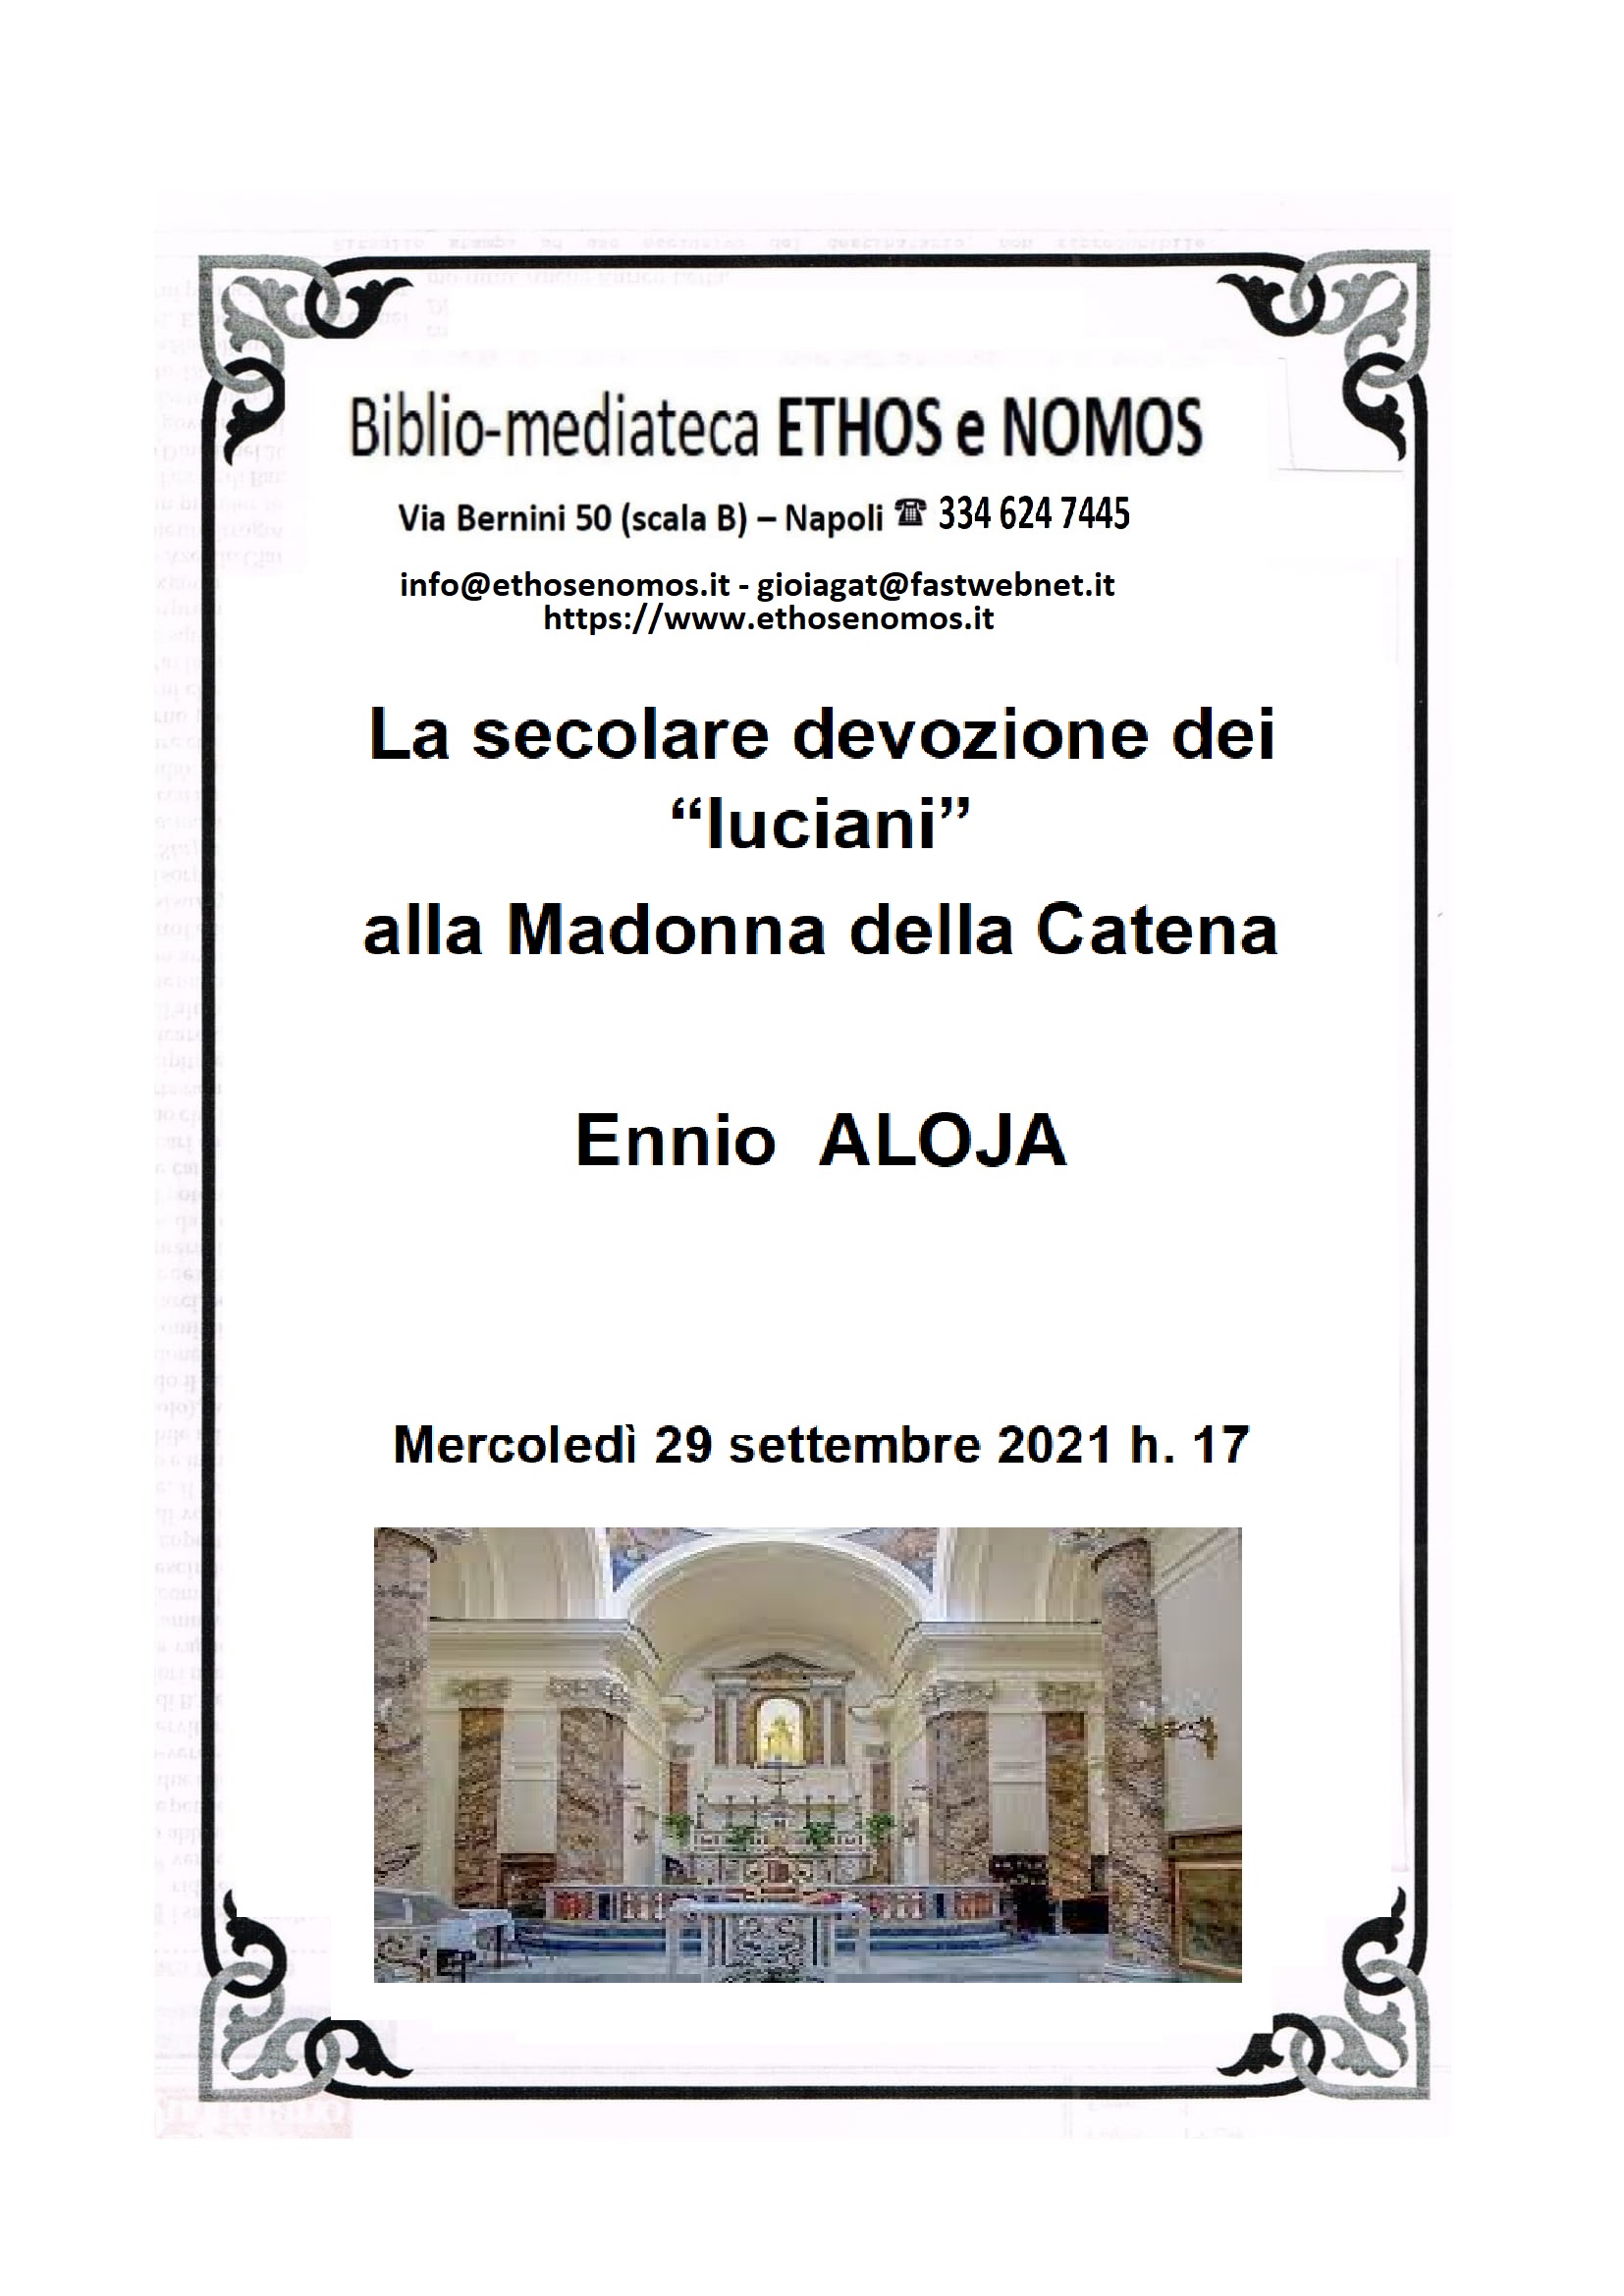 ENNIO ALOJA - La secolare devozione dei "luciani" alla Madonna della Catena